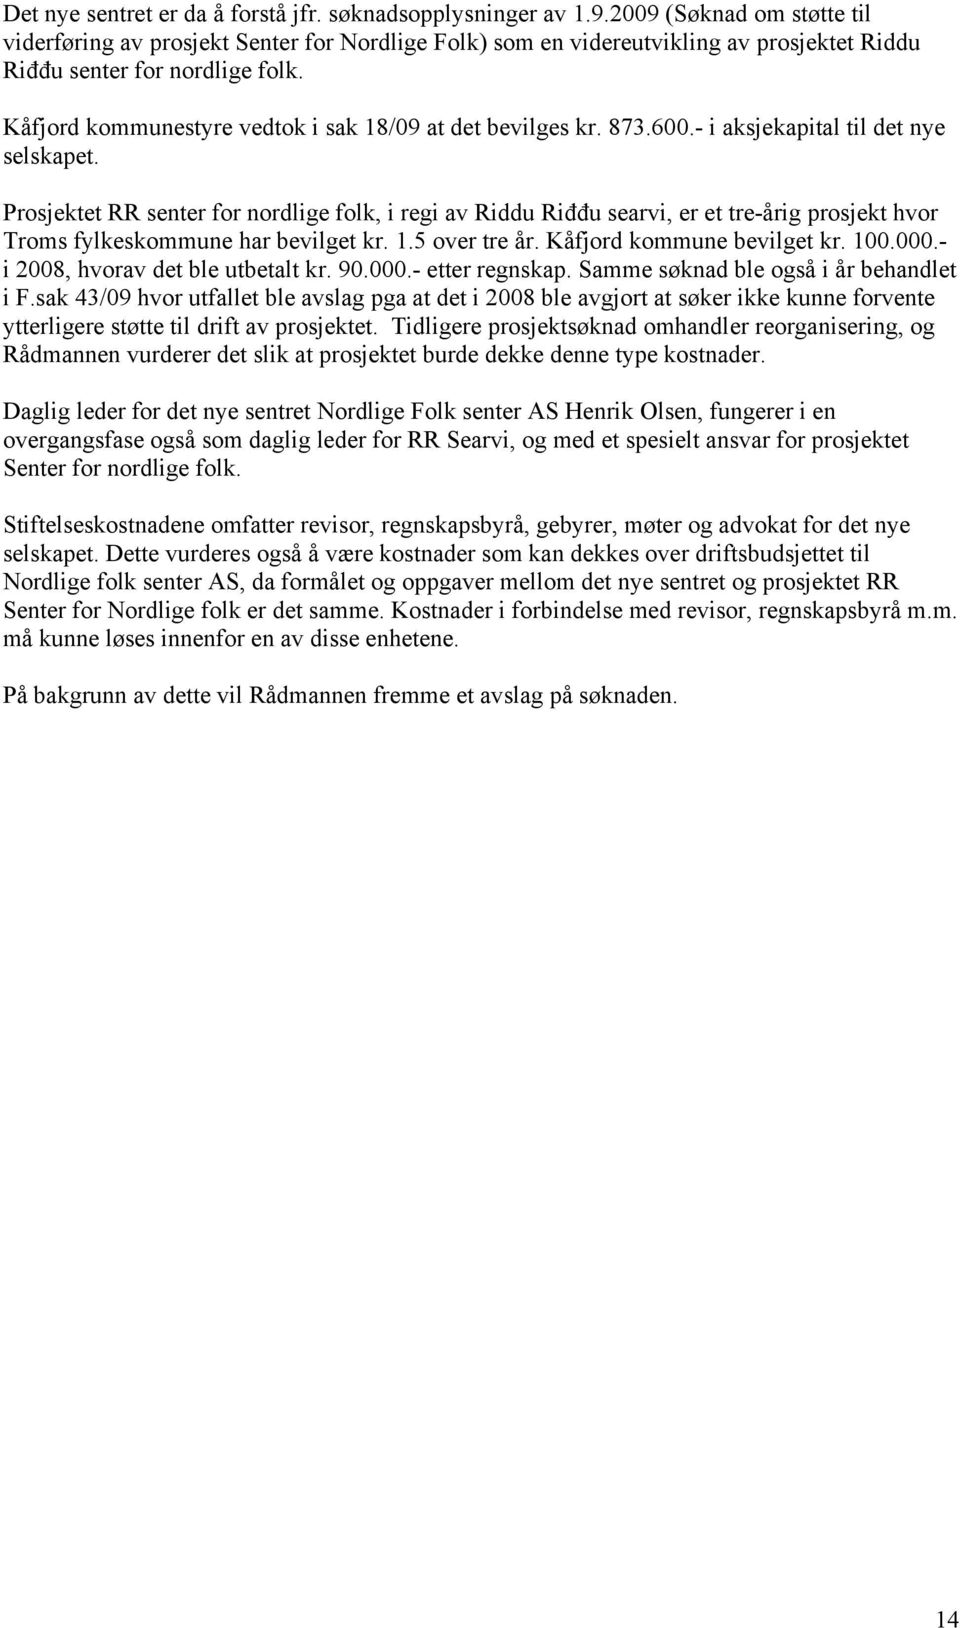 Kåfjord kommunestyre vedtok i sak 18/09 at det bevilges kr. 873.600.- i aksjekapital til det nye selskapet.